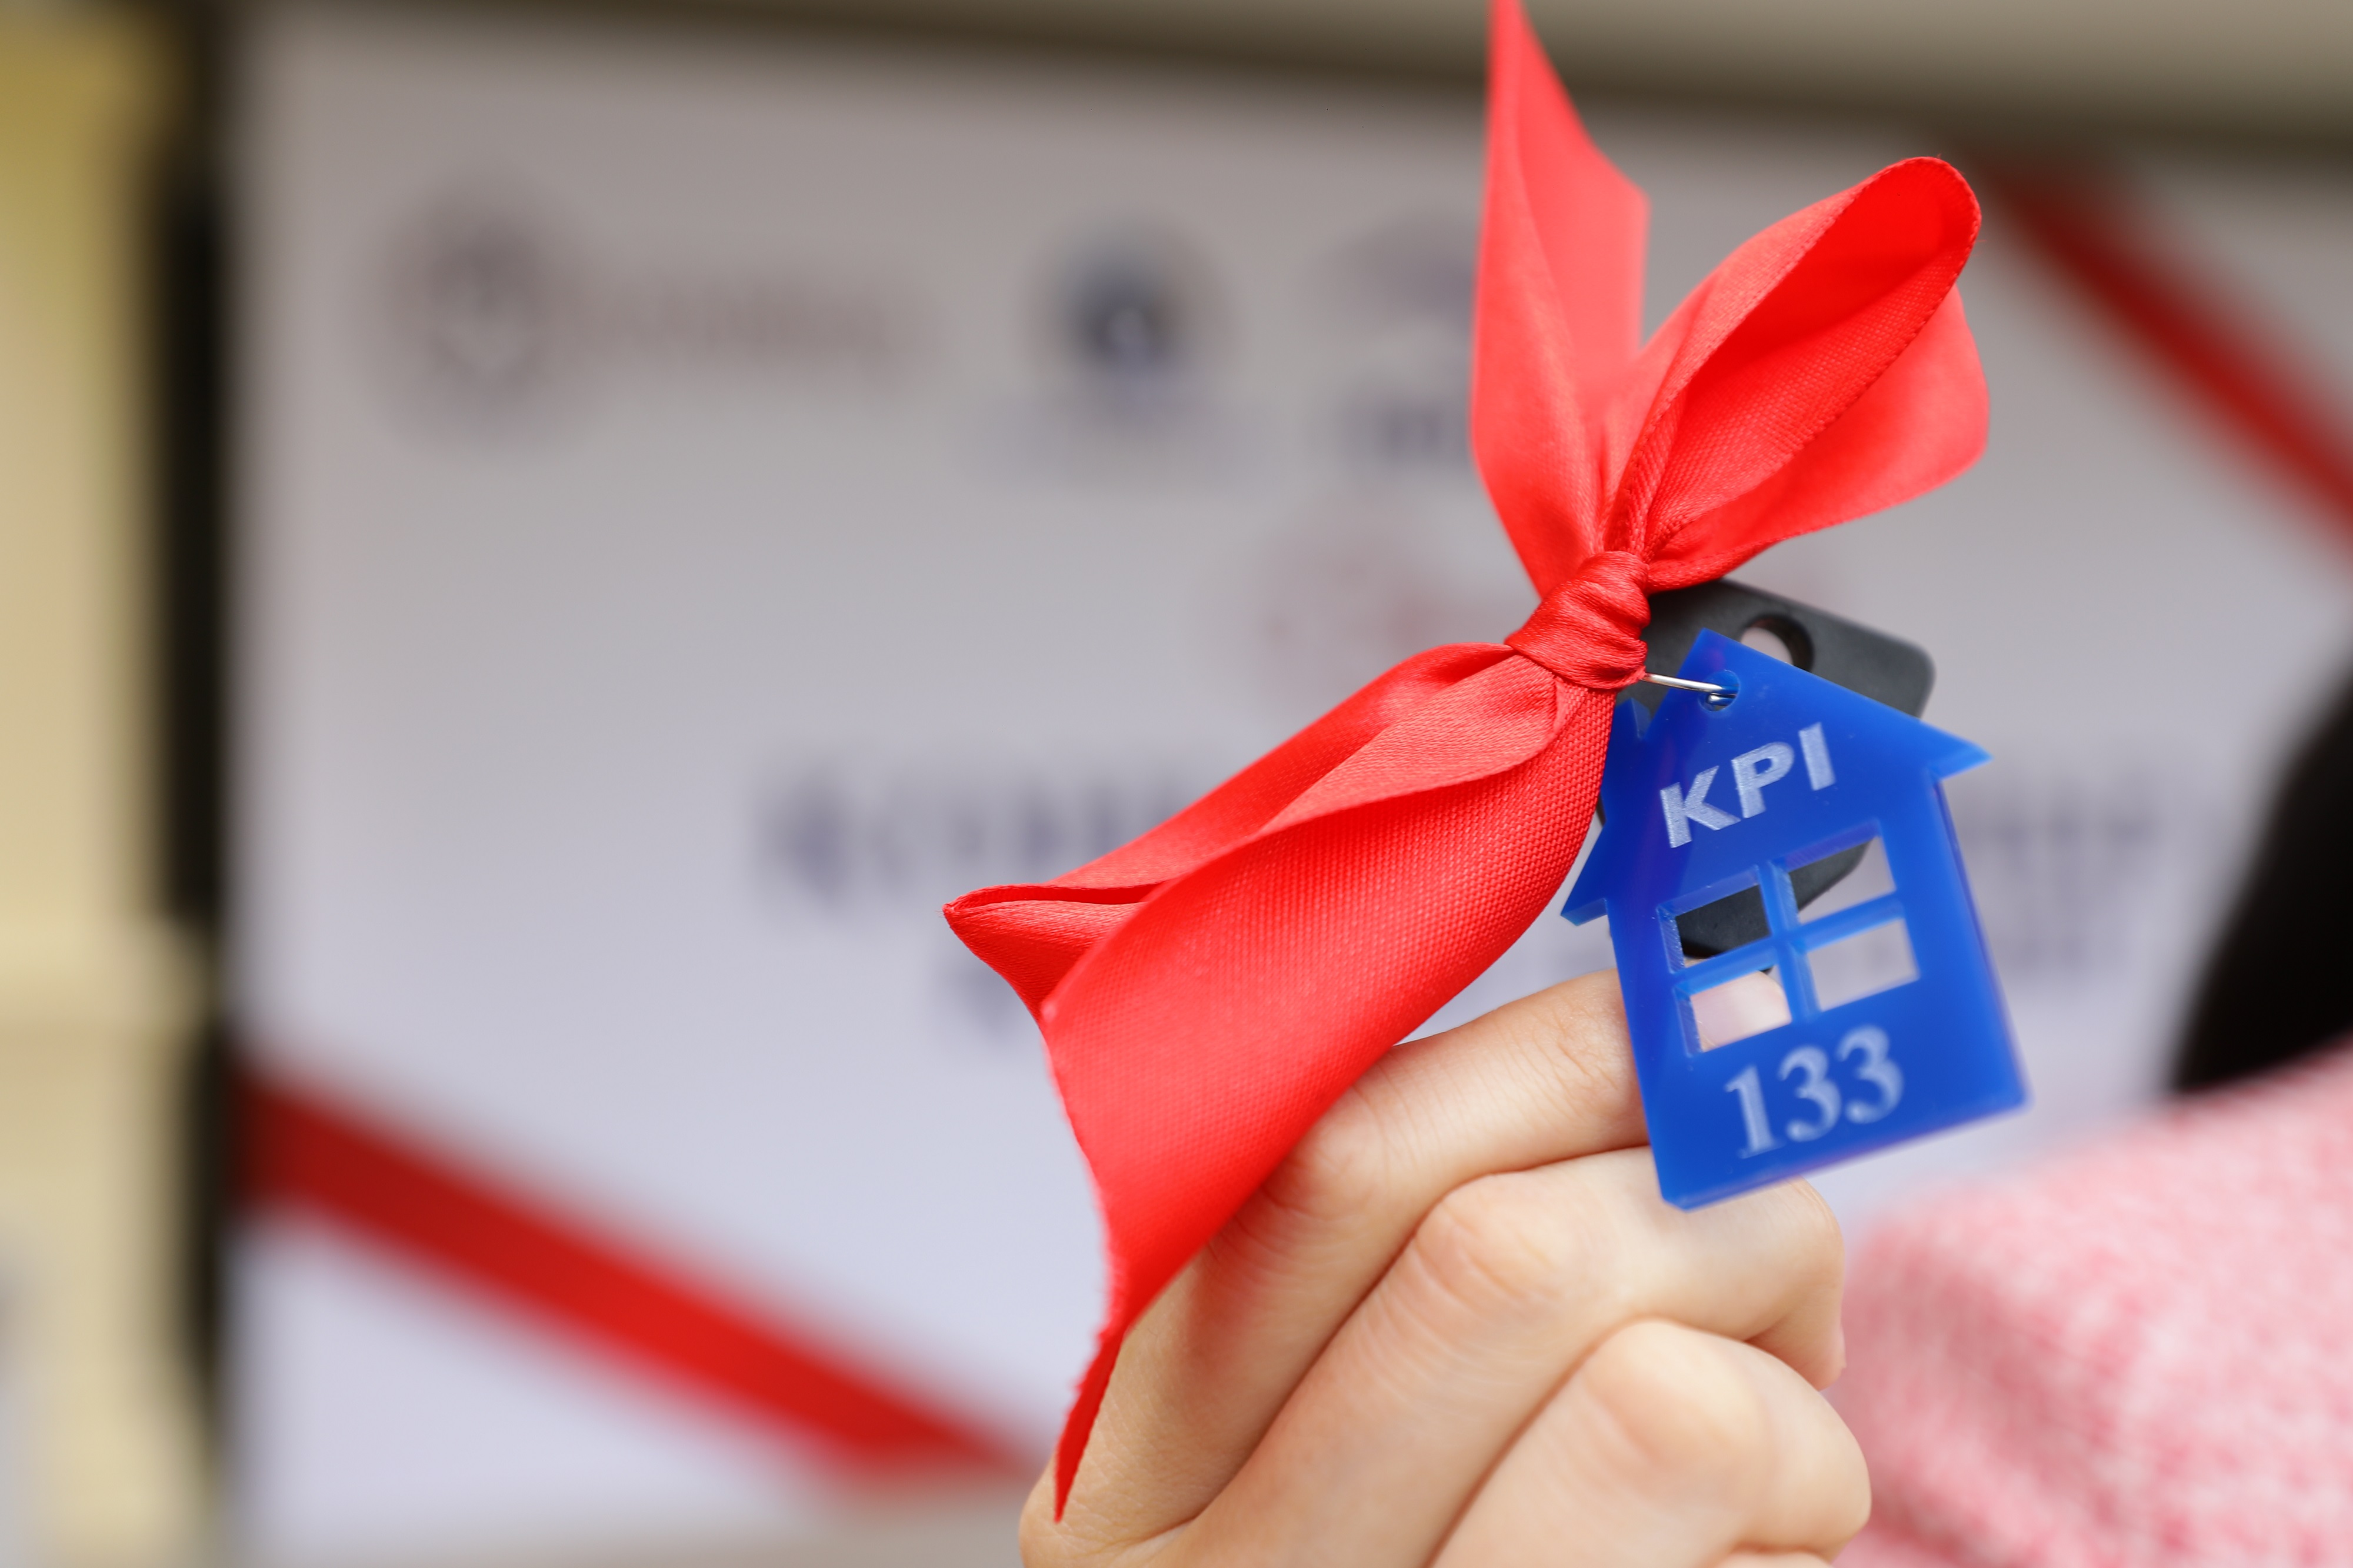 Работники ТОО «KPI Inc.» получили ключи от квартир по льготной программе